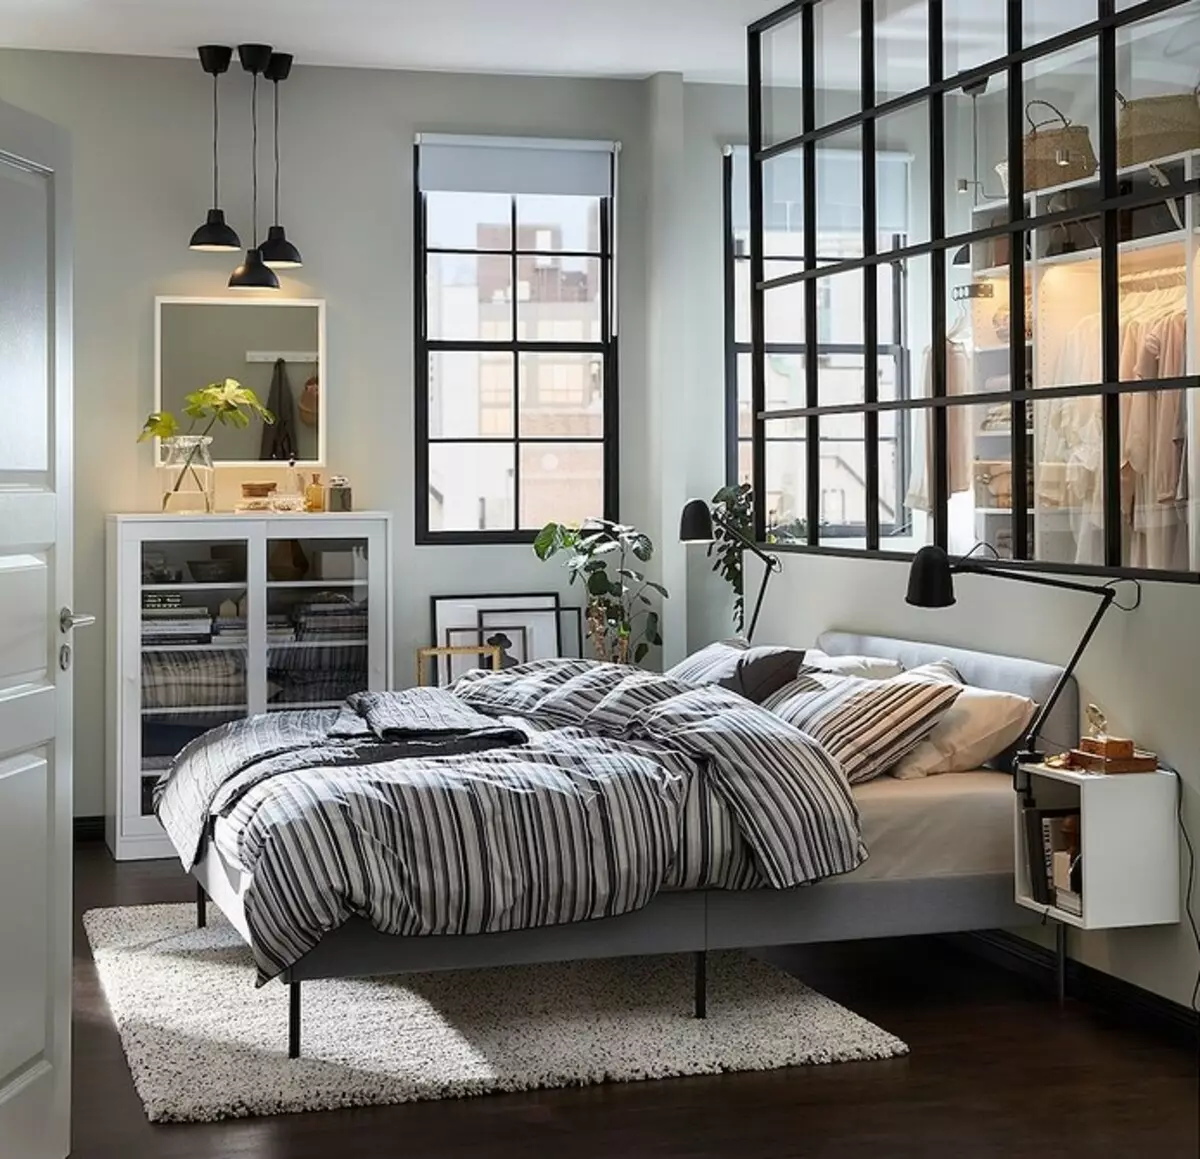 10 posti letto da IKEA per creare una camera da letto interna accogliente e funzionale 1555_138